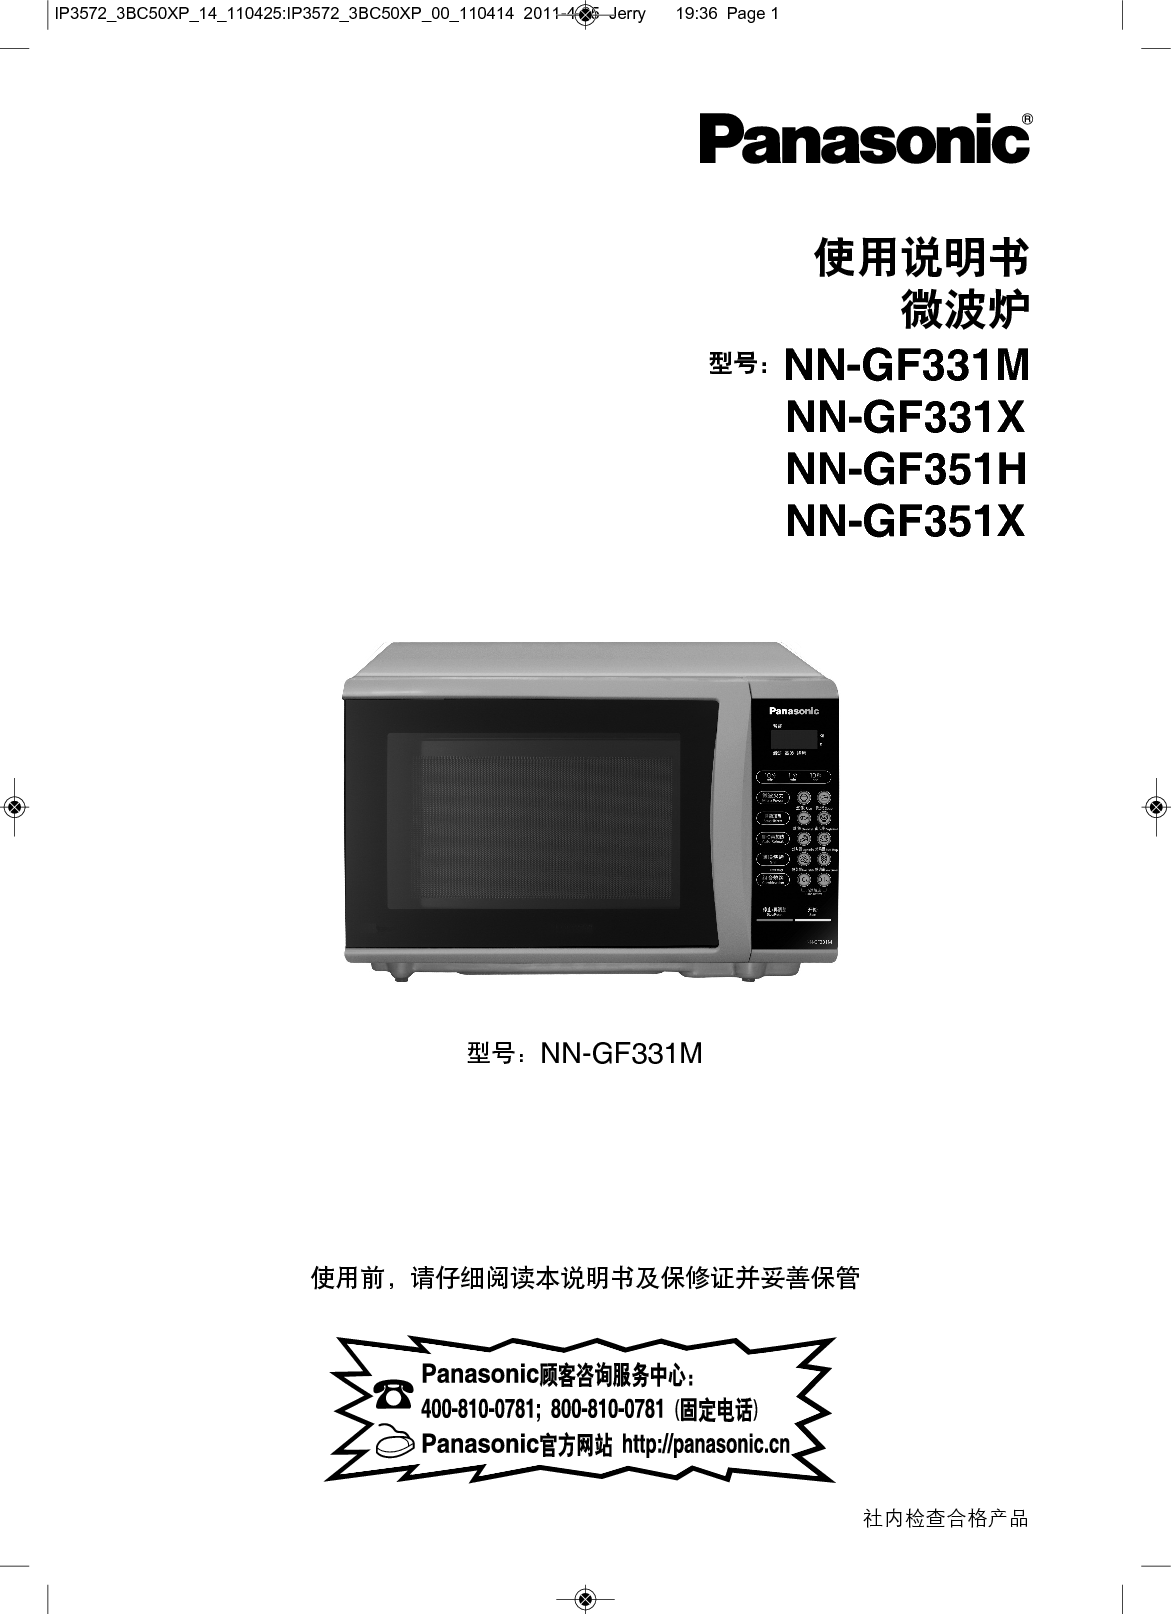 松下 Panasonic NN-GF331M 说明书 封面